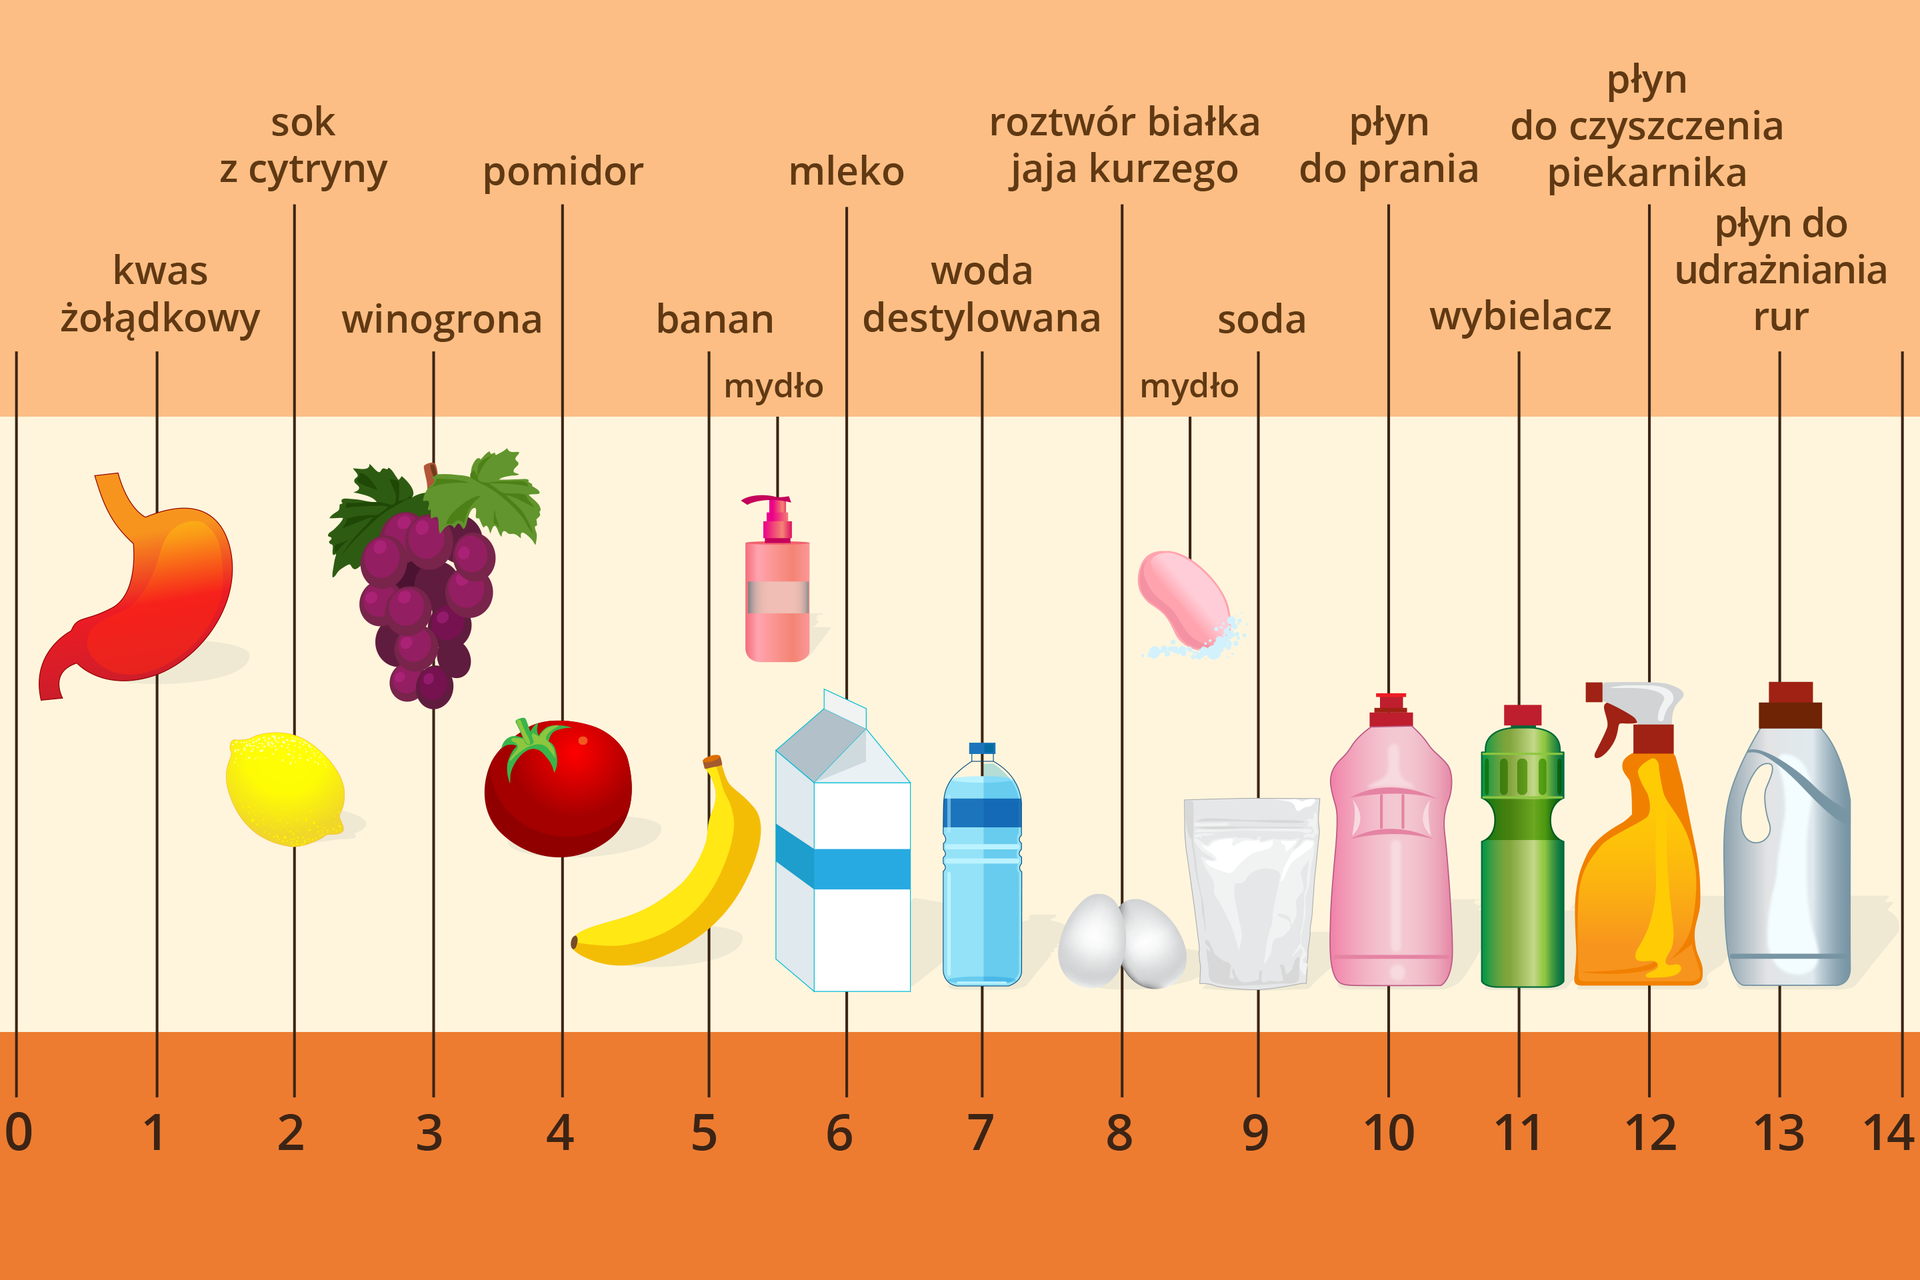 Kolorowa tabela opisująca odczyn przykładowych substancji w skali pH. W dolnej części ilustracji znajduje się skala ponumerowana od zera do czternastu. W centralnej części umieszczono rysunki różnych przedmiotów, obiektów naturalnych i substancji, a w górnej części ich nazwy. Z tabeli można się dowiedzieć, że kwas żołądkowy ma odczyn pH wynoszący 1, sok z cytryny dwa, winogrona trzy, pomidory cztery, banany pięć, mydło w płynie pięć i pół, mleko sześć, woda destylowana siedem (a więc jest obojętna), białko jajka kurzego osiem, mydło tradycyjne osiem i pół, soda dziewięć, płyn do prania dziesięć, wybielacz jedenaście, płyn do czyszczenia piekarnika dwanaście, a płyn do udrażniania rur trzynaście.